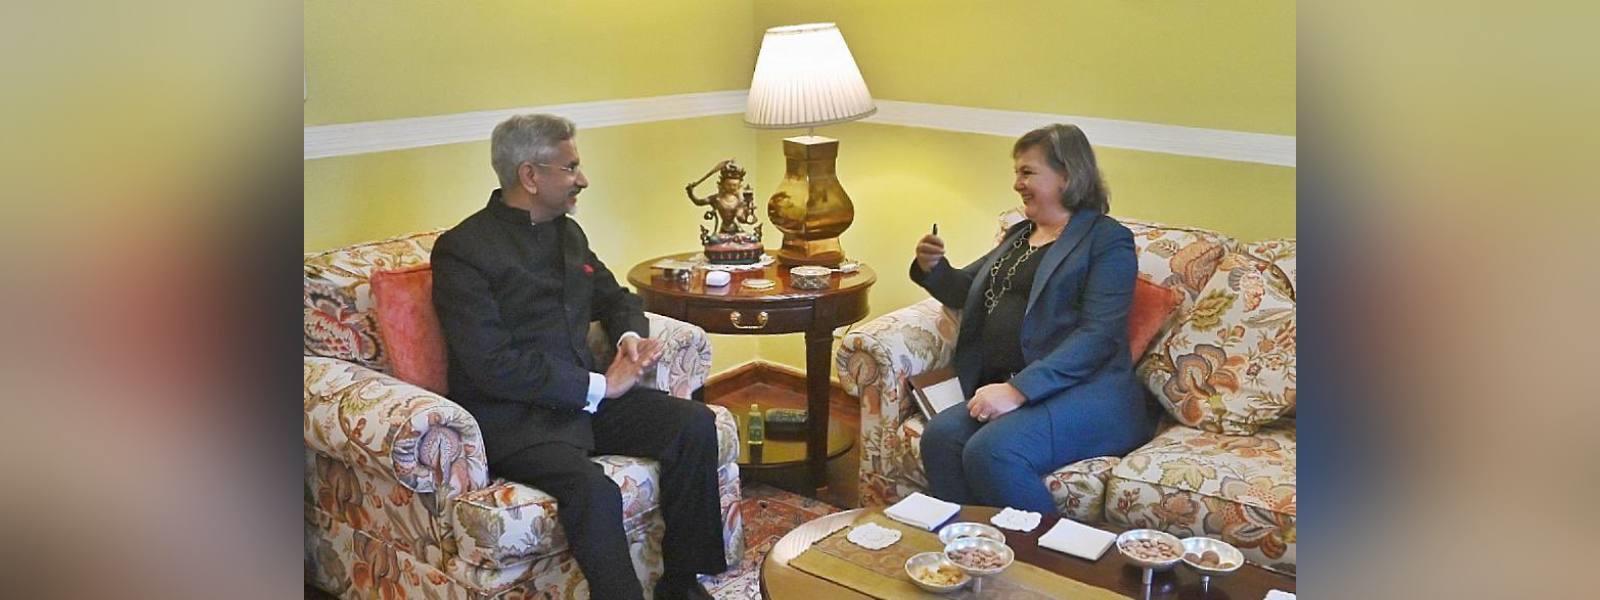 विदेश मंत्री डॉ. एस जयशंकर की नई दिल्ली में संयुक्त राज्य अमेरिका के राजनीतिक मामलों की उपमंत्री सुश्री विक्टोरिया नूलैंड से मुलाकात 